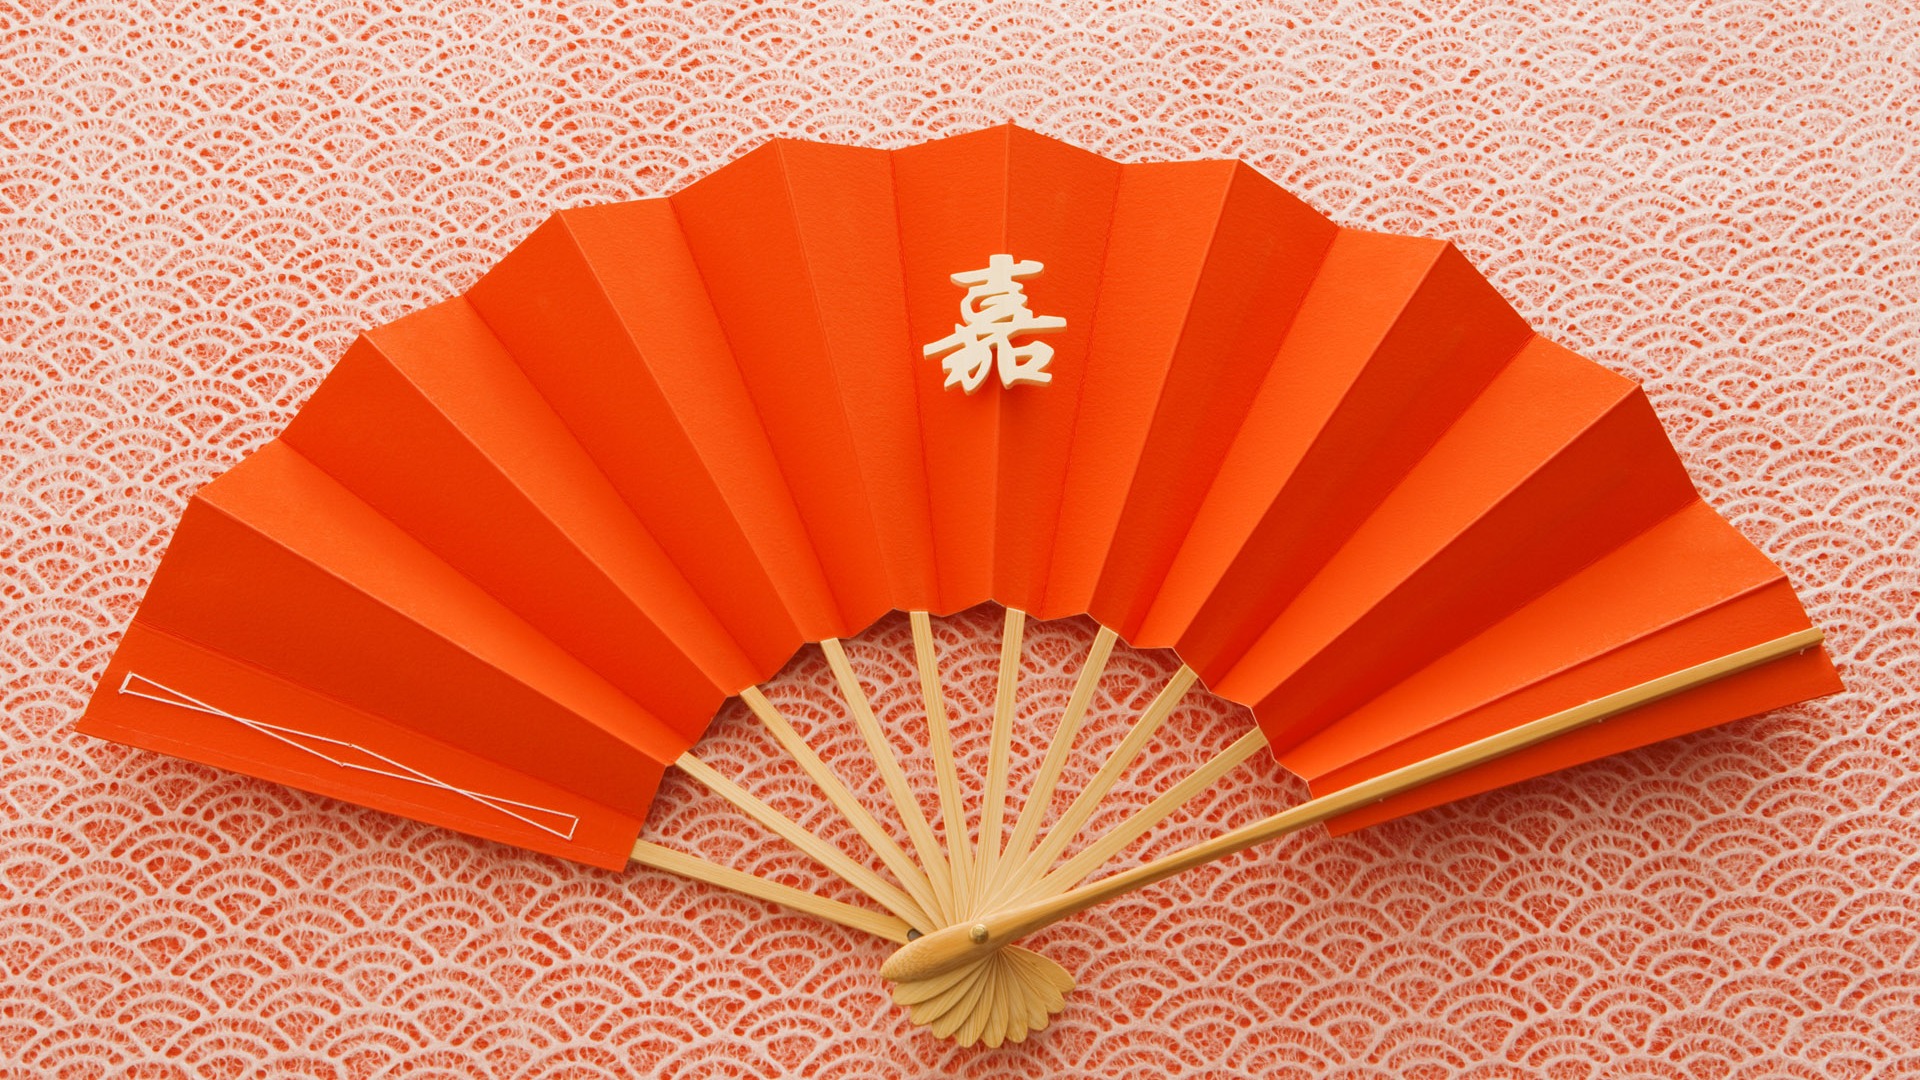 Fondos de año nuevo japonés Cultura (2) #20 - 1920x1080